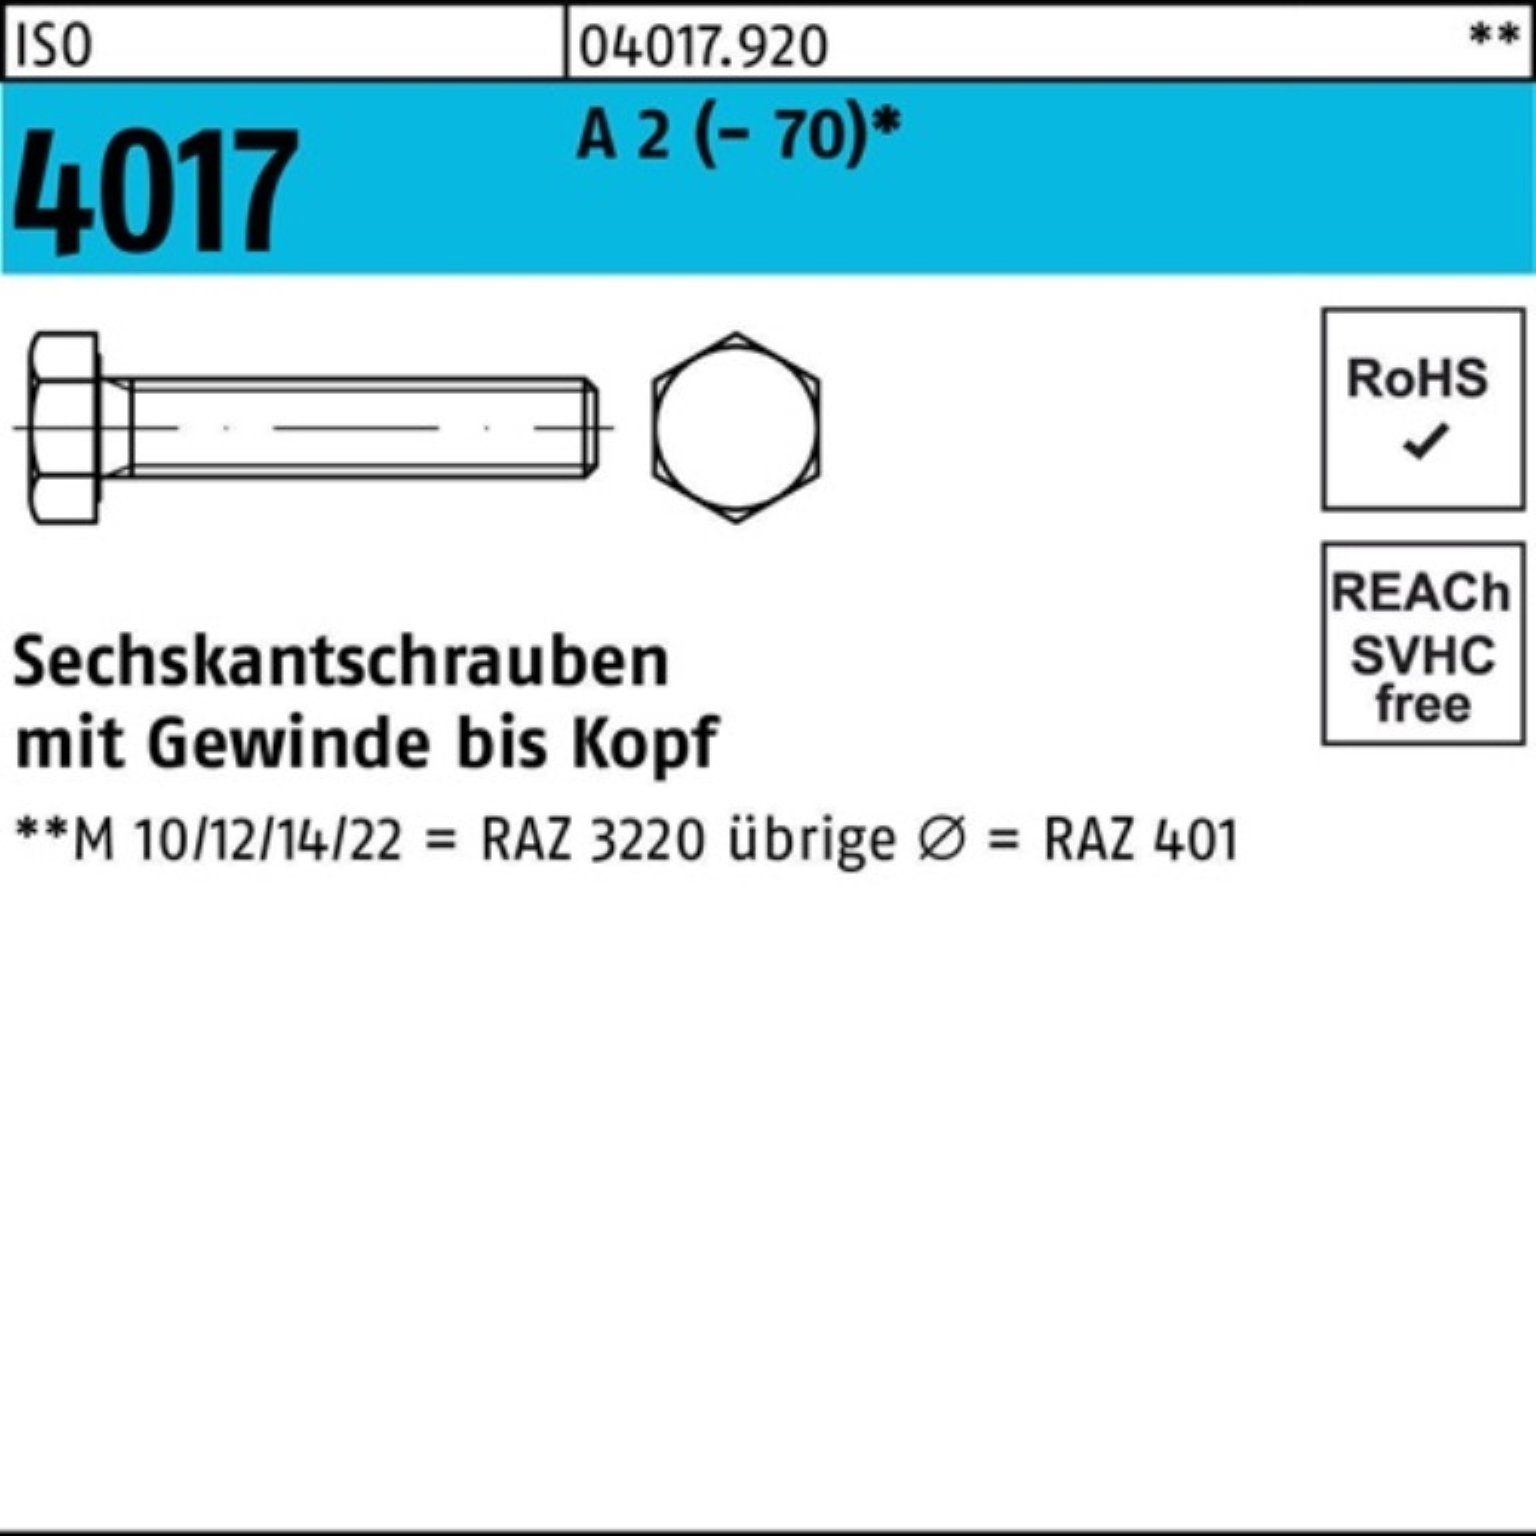 Bufab Sechskantschraube 100er Pack Sechskantschraube ISO 4017 VG M6x 35 A 2 (70) 100 Stück